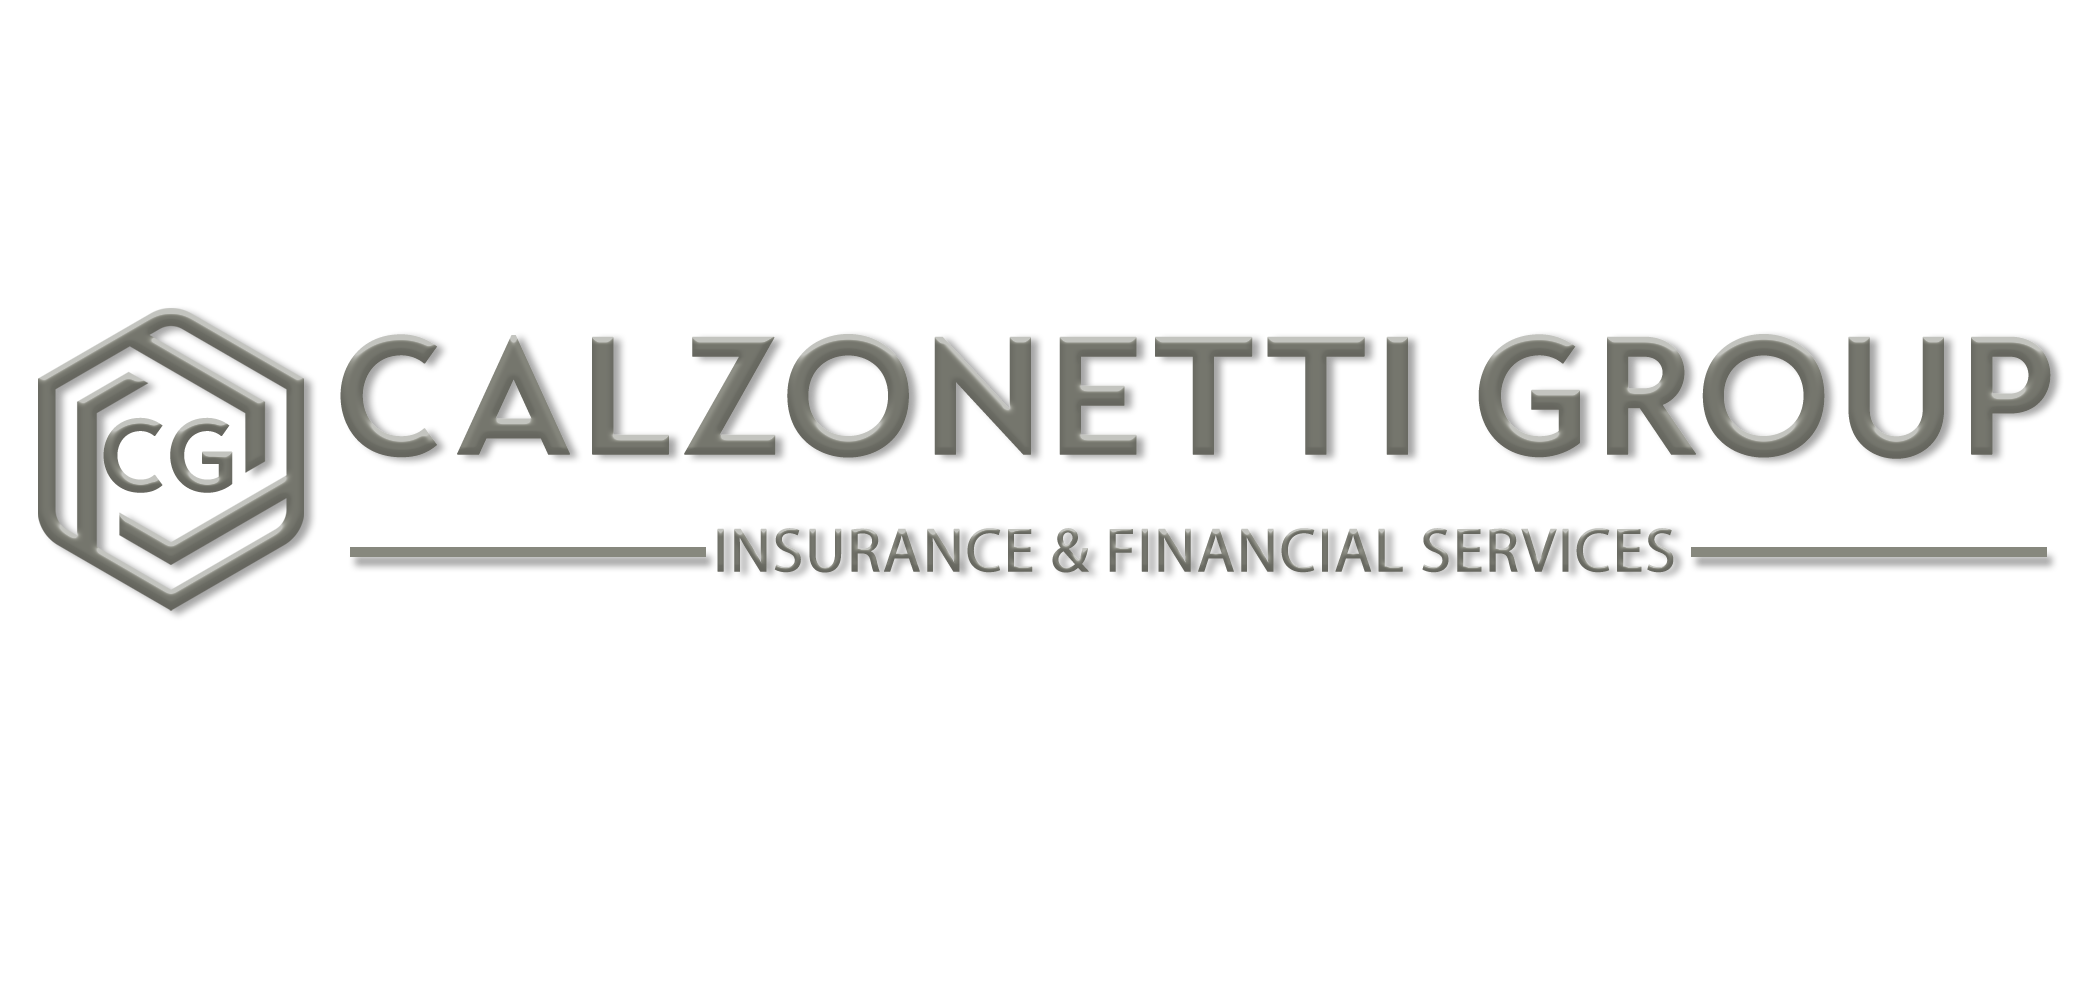 calzonettigroup.com